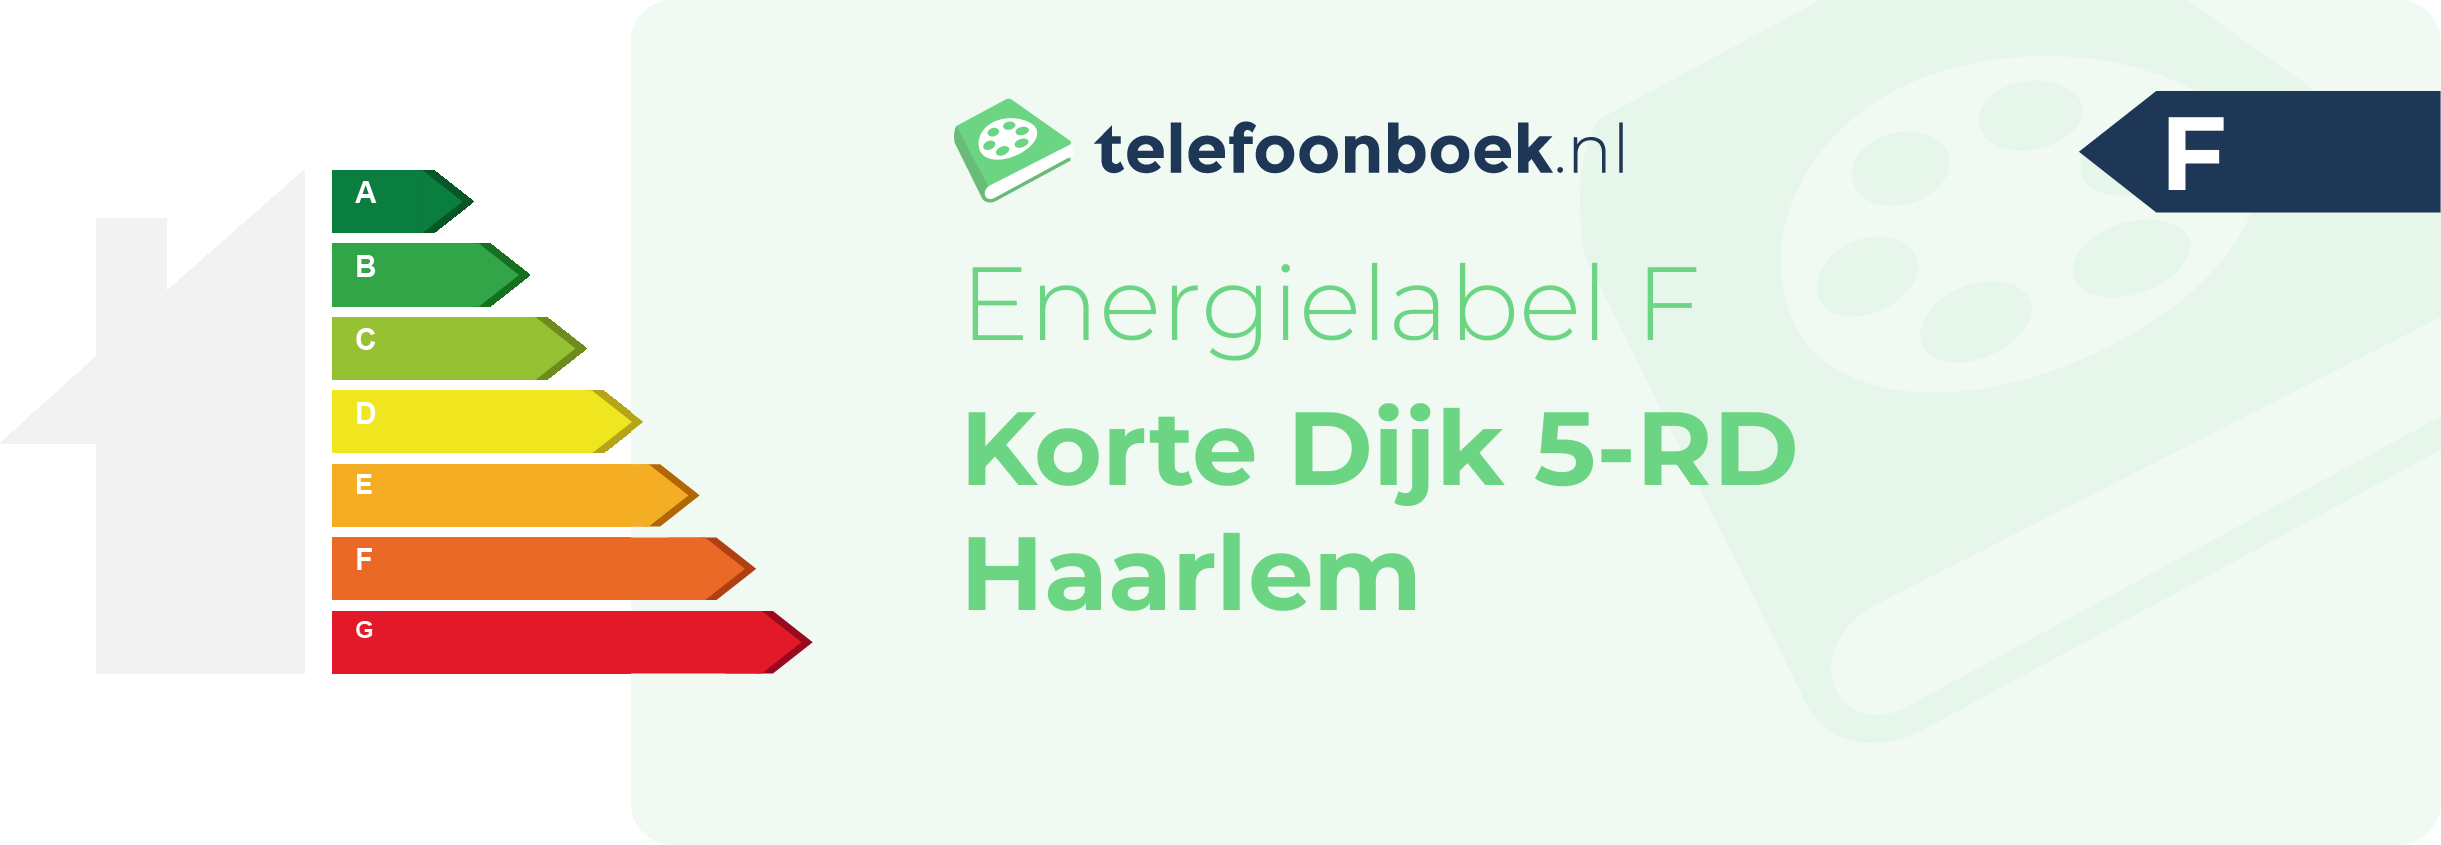 Energielabel Korte Dijk 5-RD Haarlem